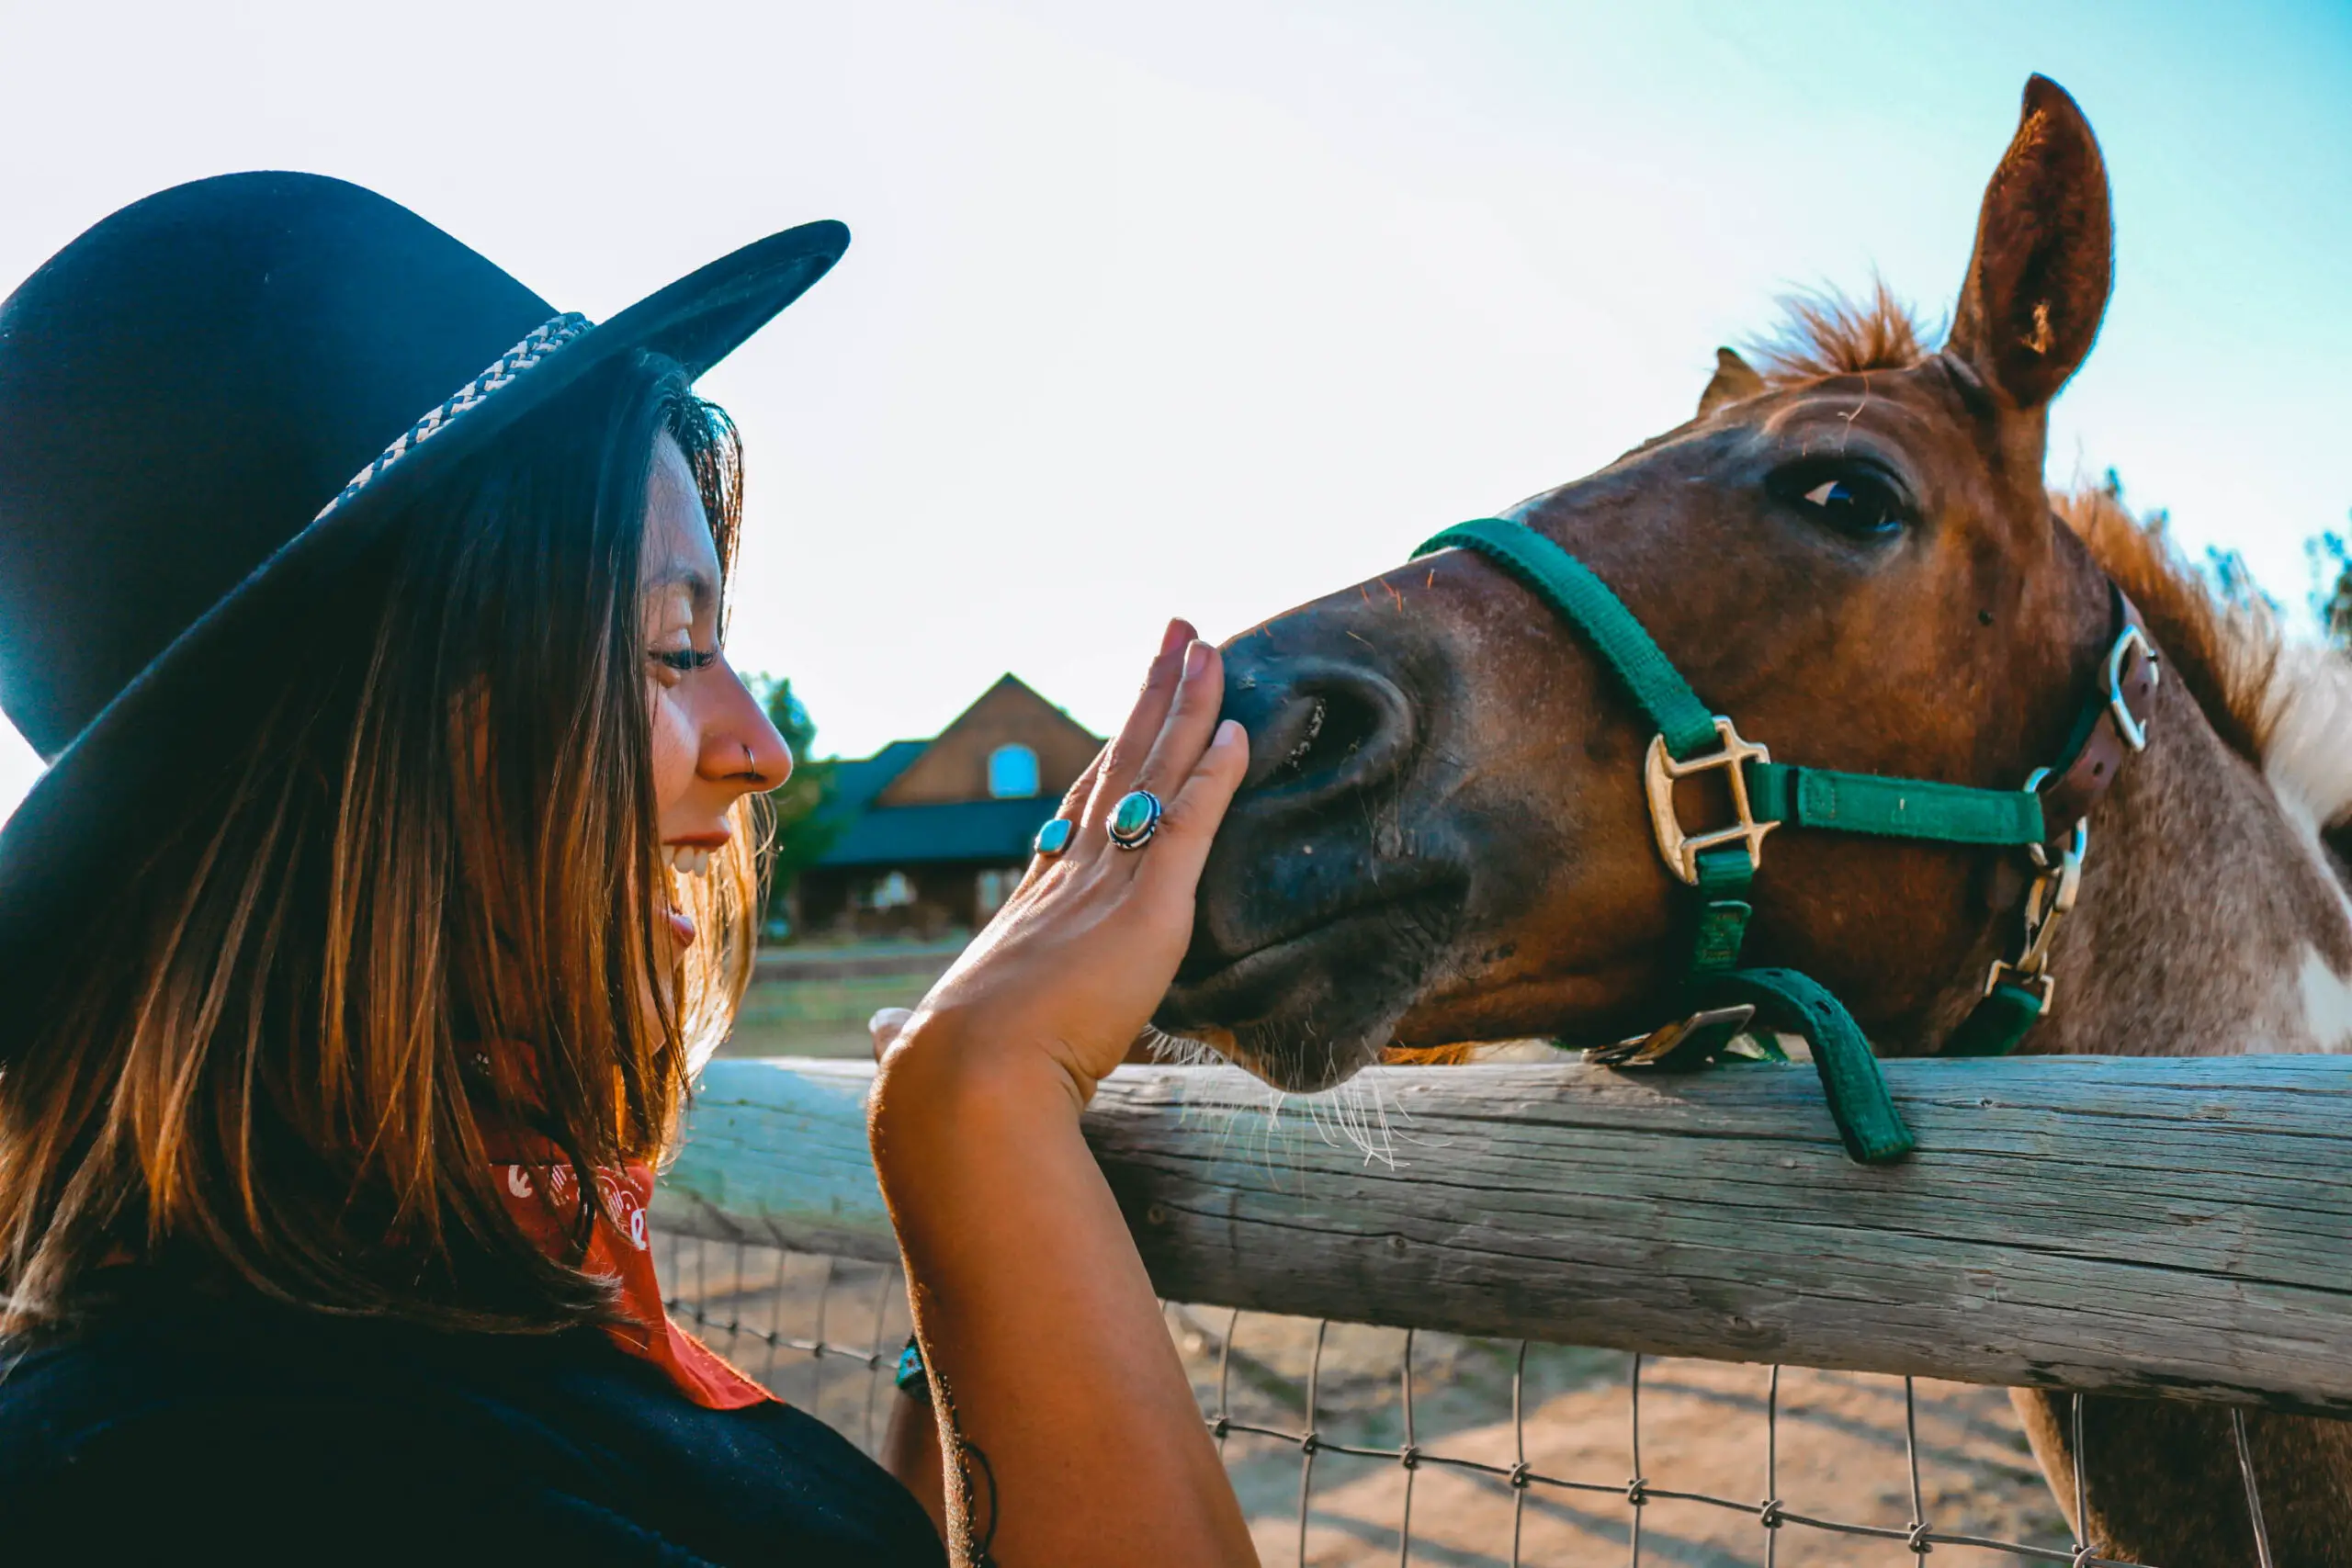 Do horses make good pets?